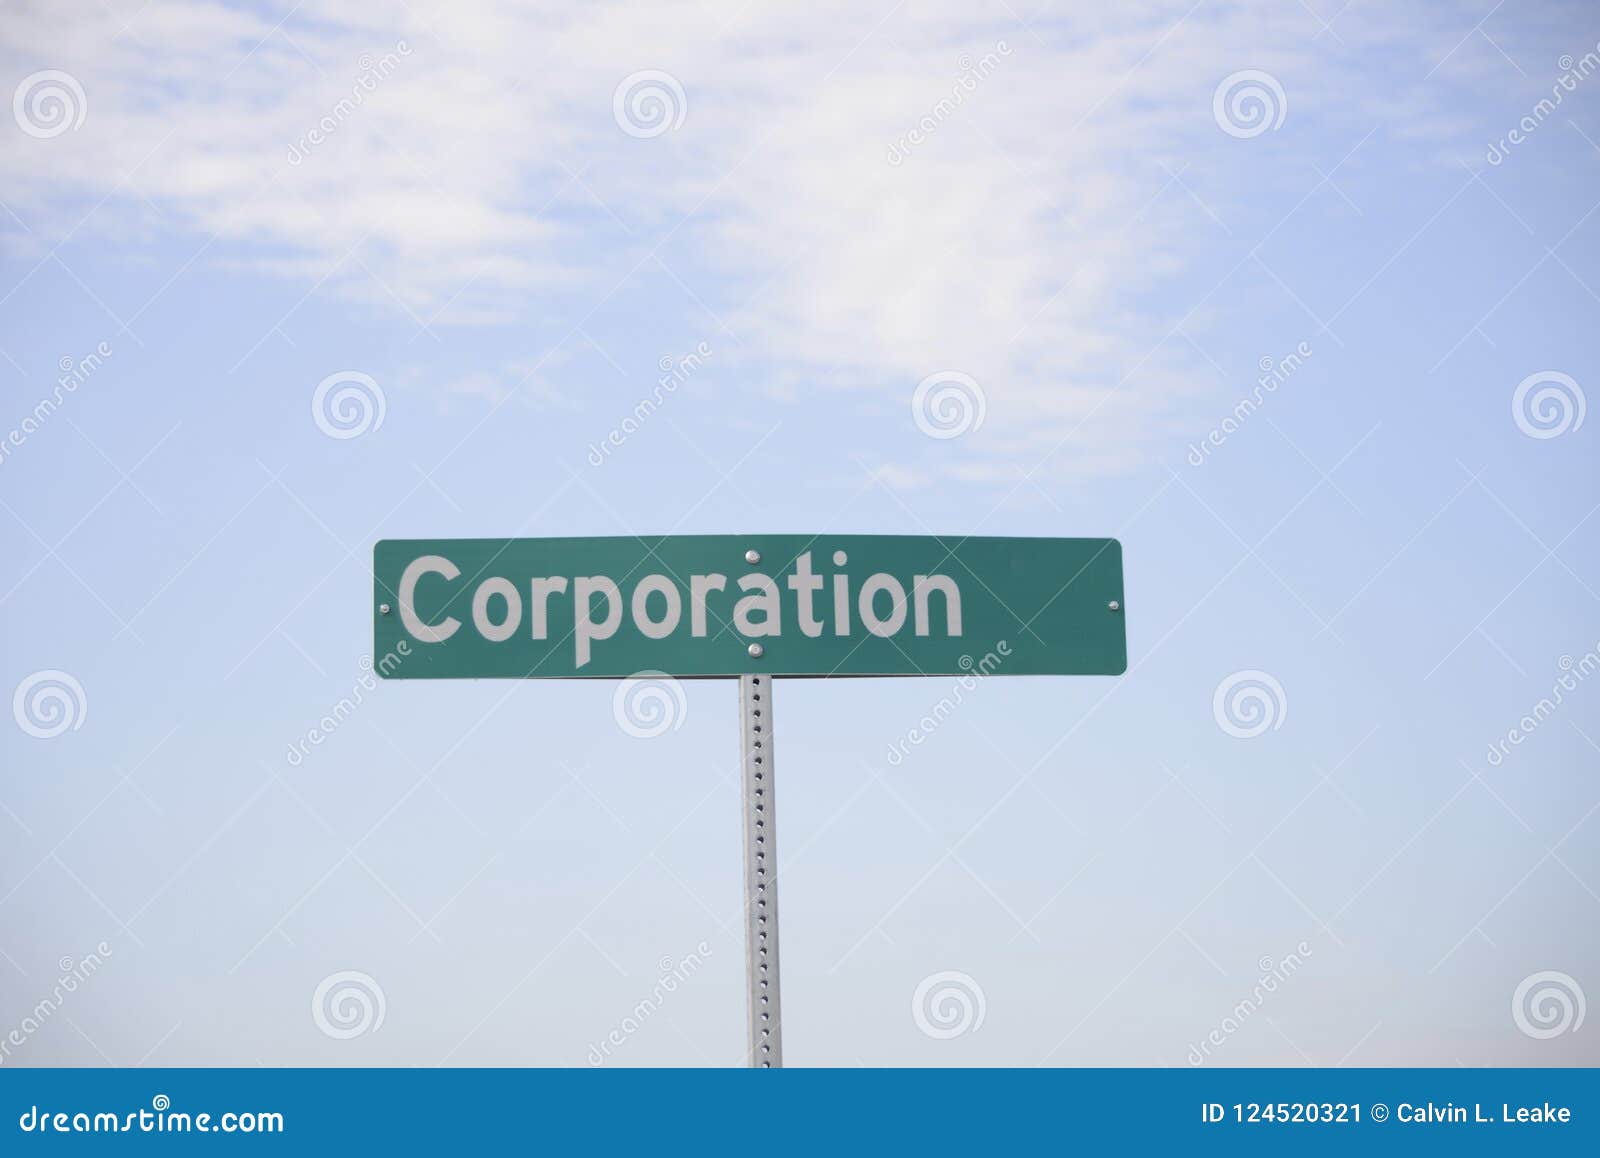 corporation for profit